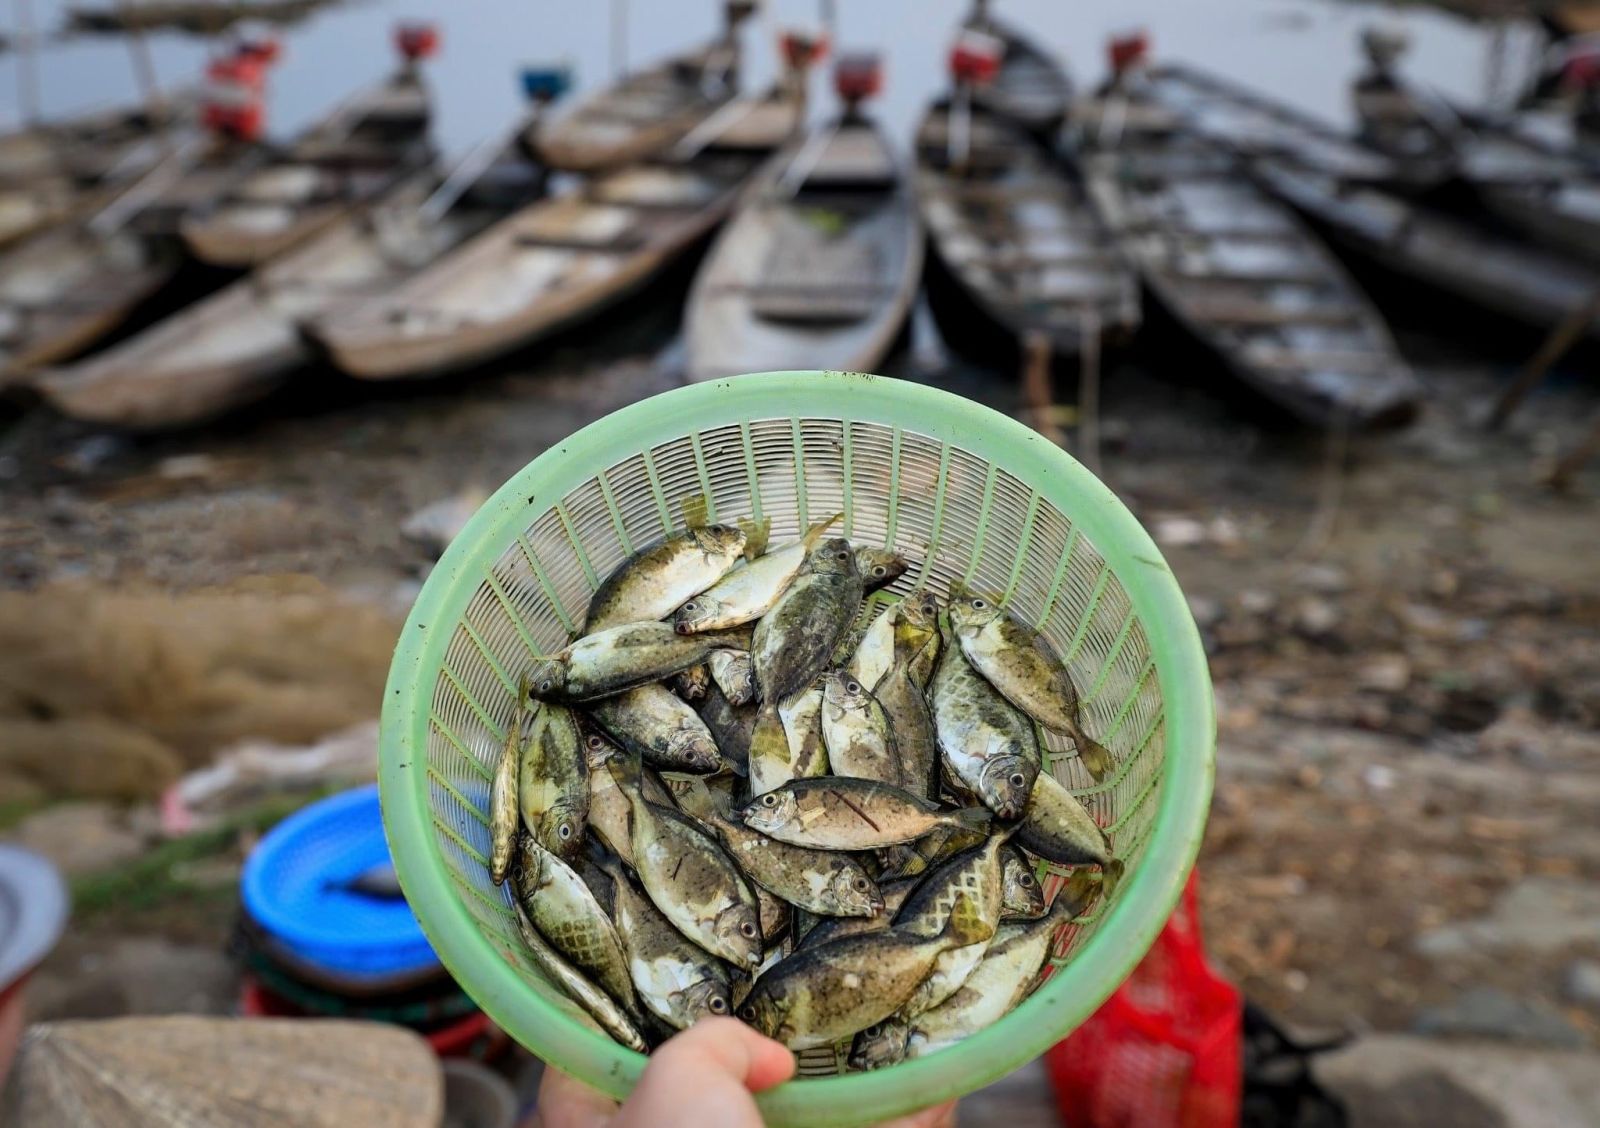 Ngoài vui chơi, khám phá, khách du lịch tới đầm Chuồn còn được thưởng thức các món ngon từ một loài hải sản nổi tiếng nơi đây - cá kình (Ảnh: Pham Trong Tin).